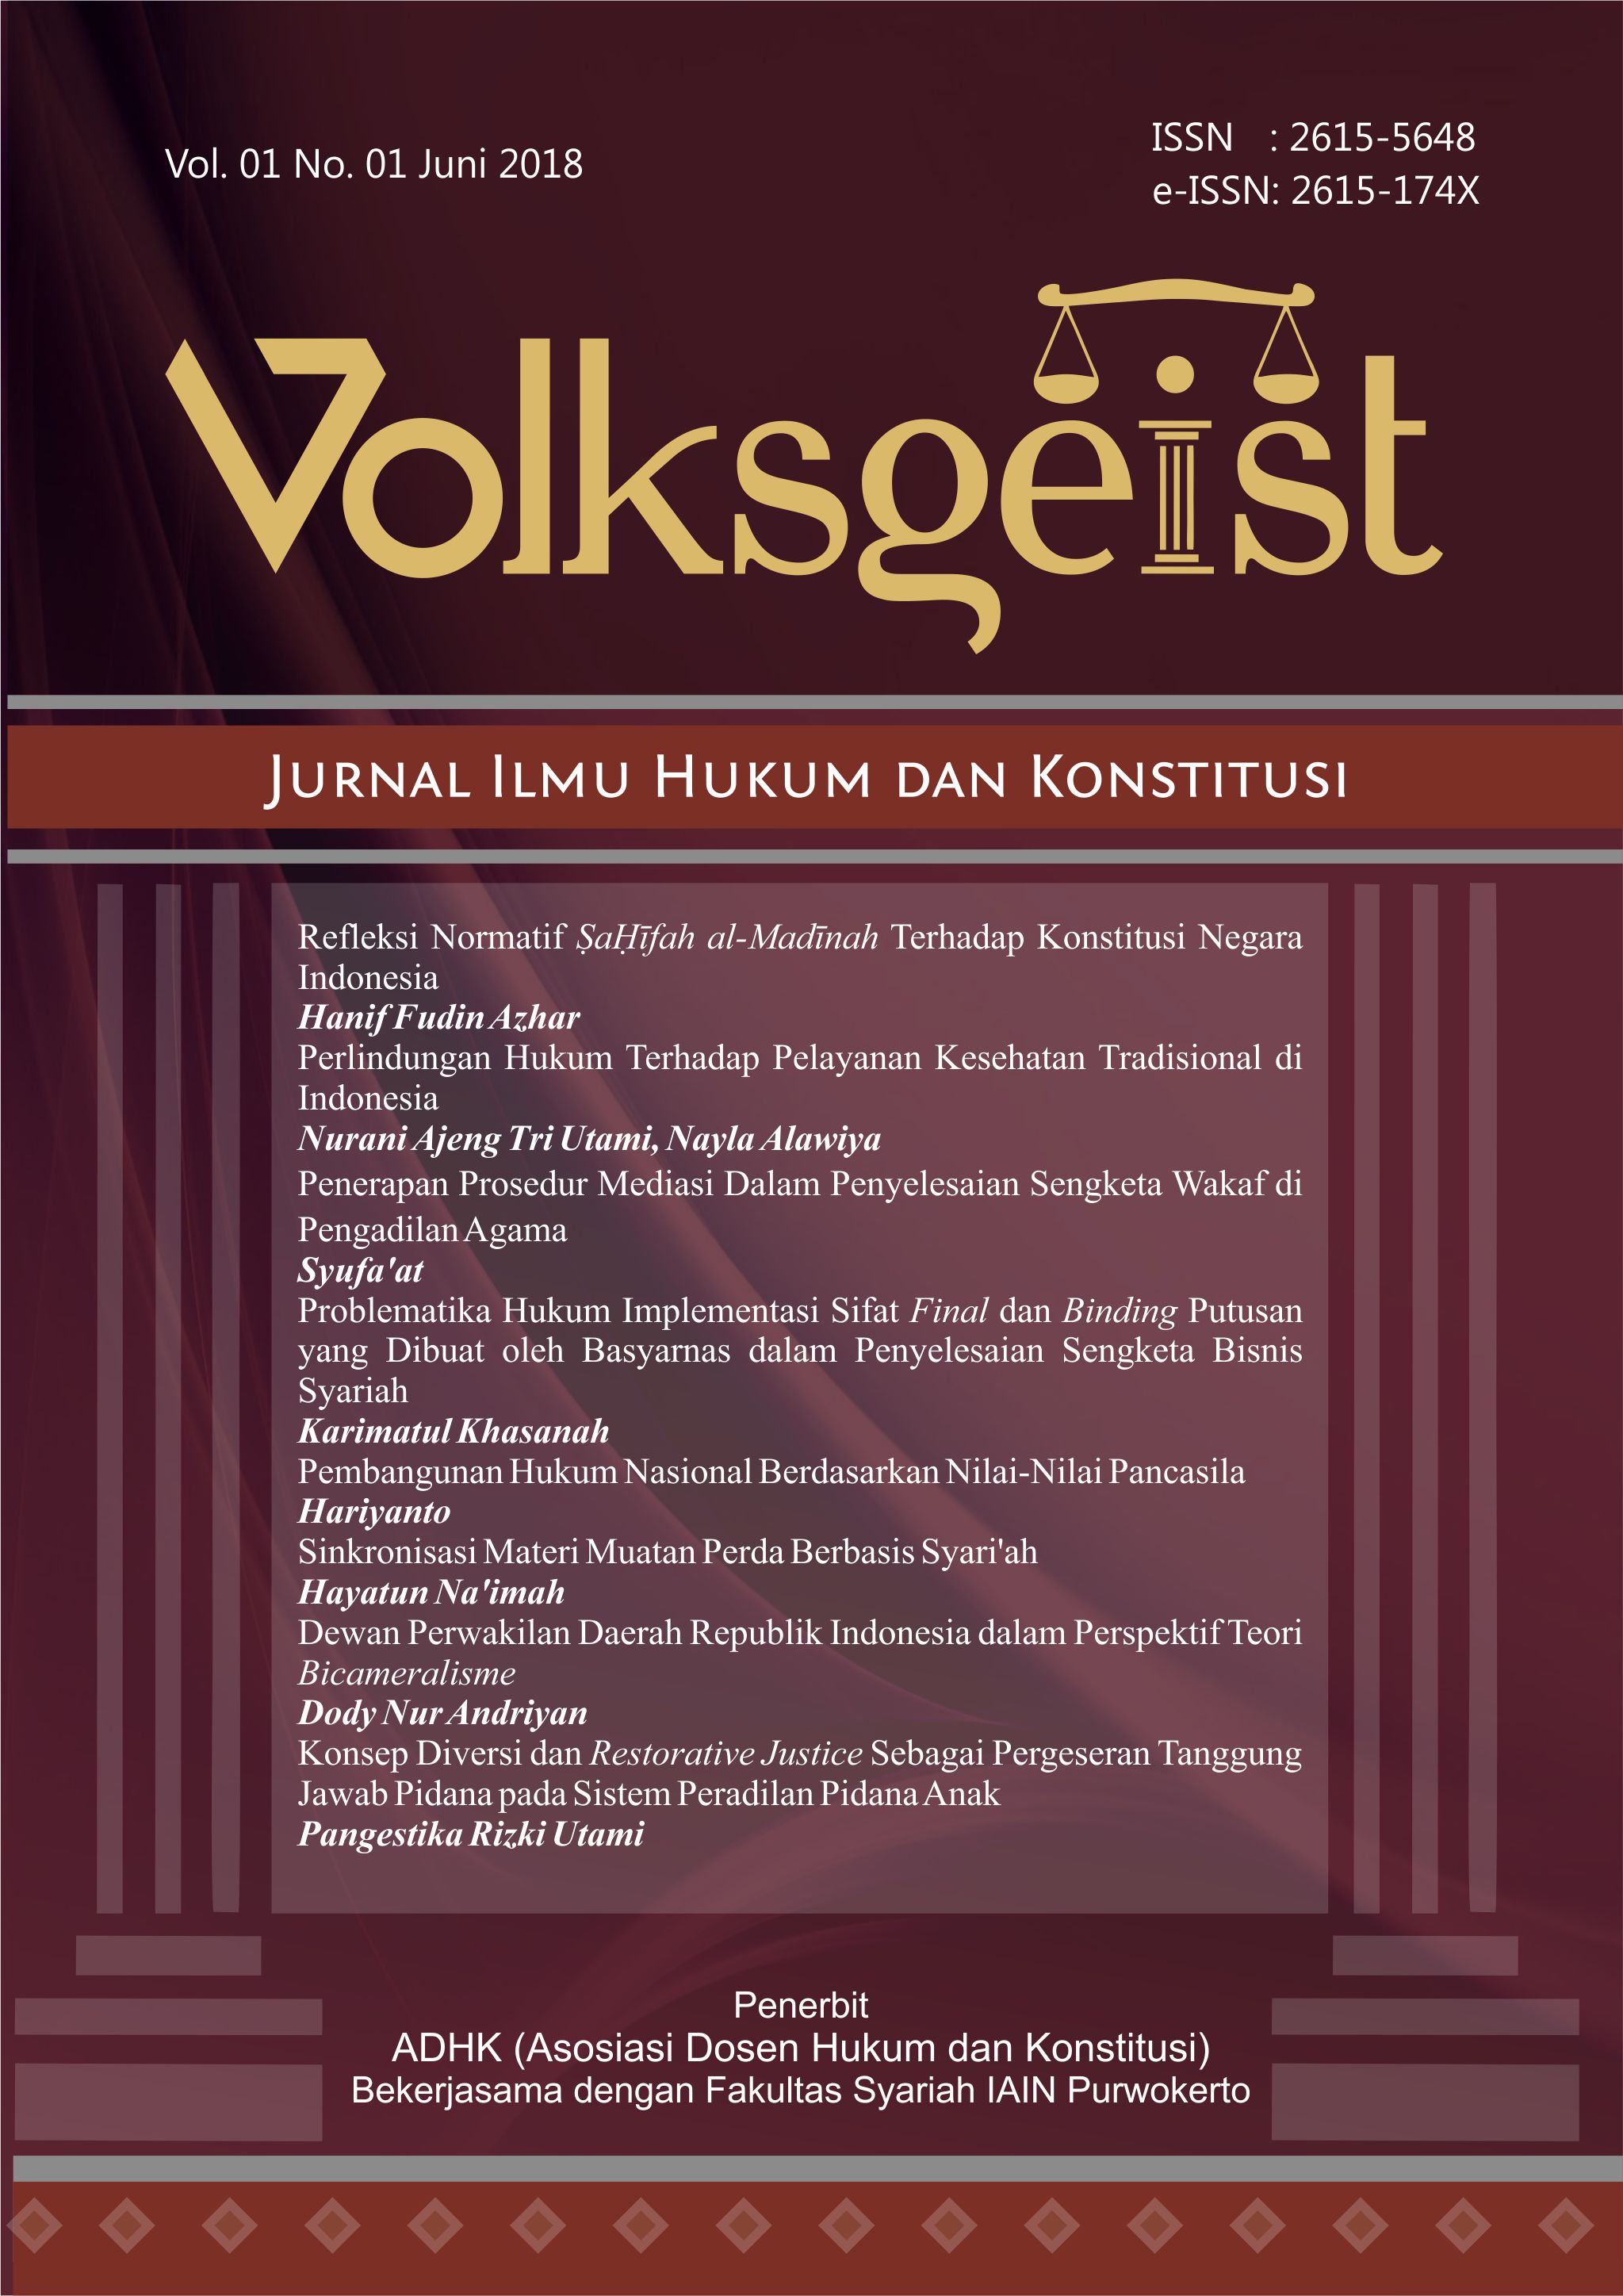 					View Vol. 1 Issue 1 (2018) Volksgeist: Jurnal Ilmu Hukum dan Konstitusi
				